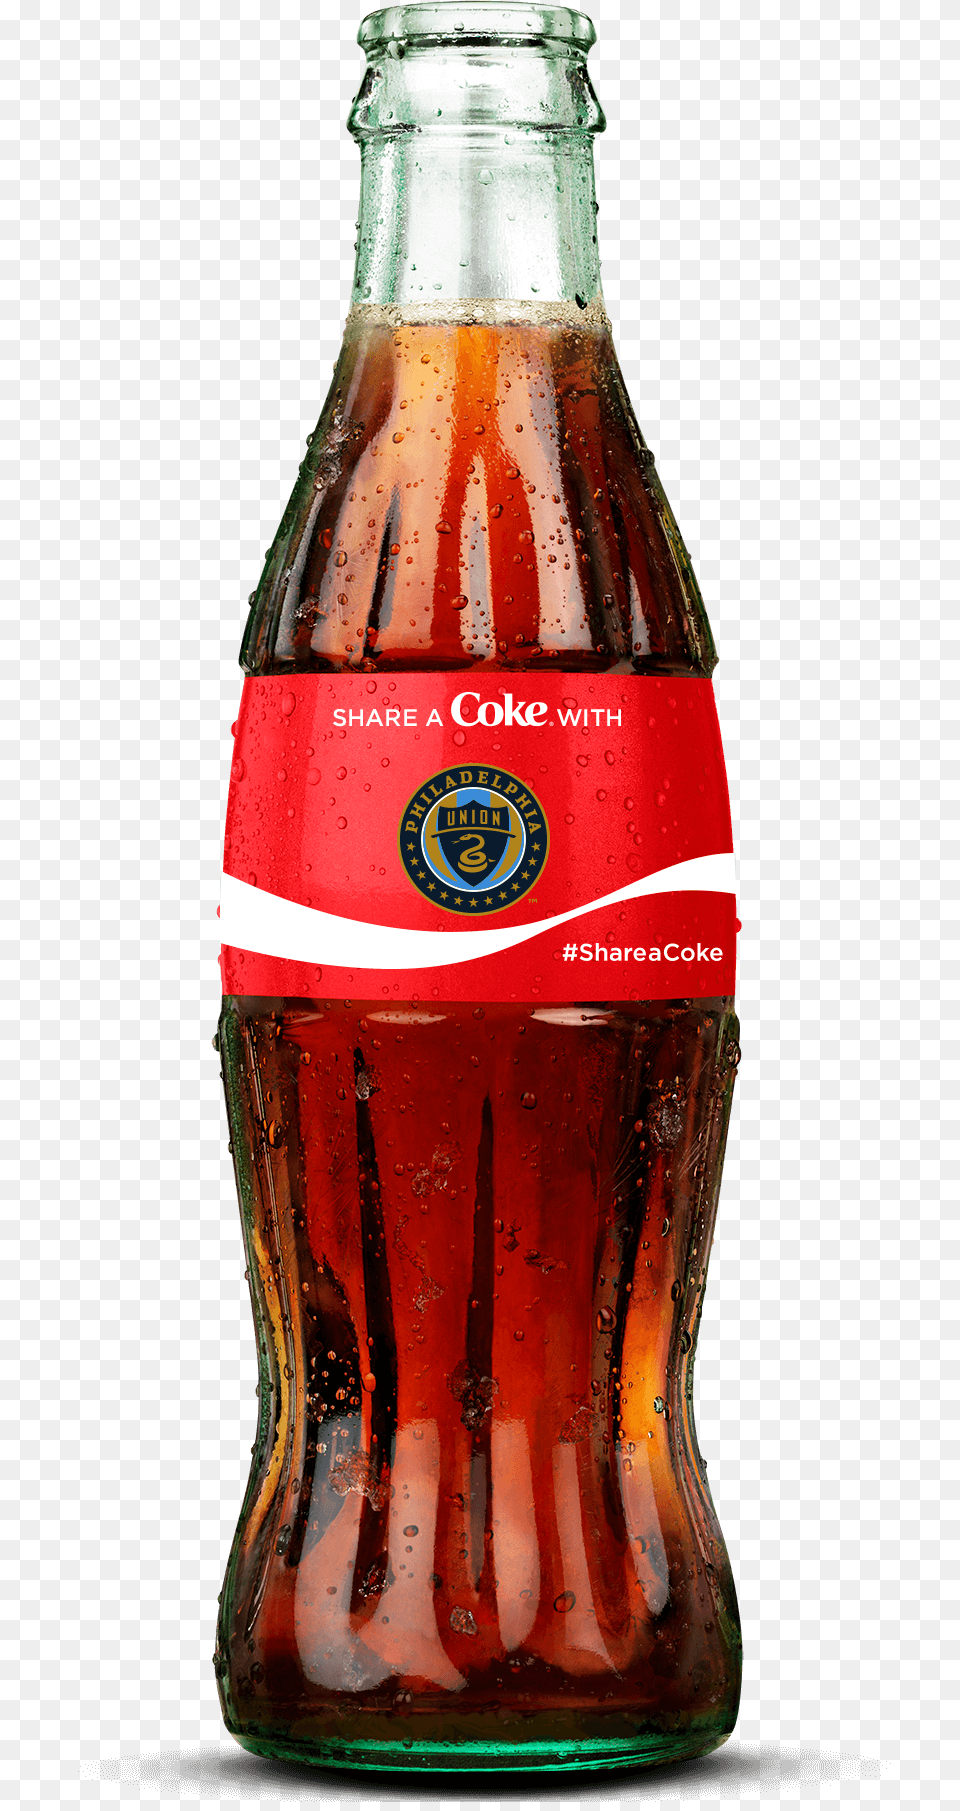 Philadelphia Union Soccer Team Coke Bottle Coke Store, Alcohol, Beer, Beverage, Soda Free Png